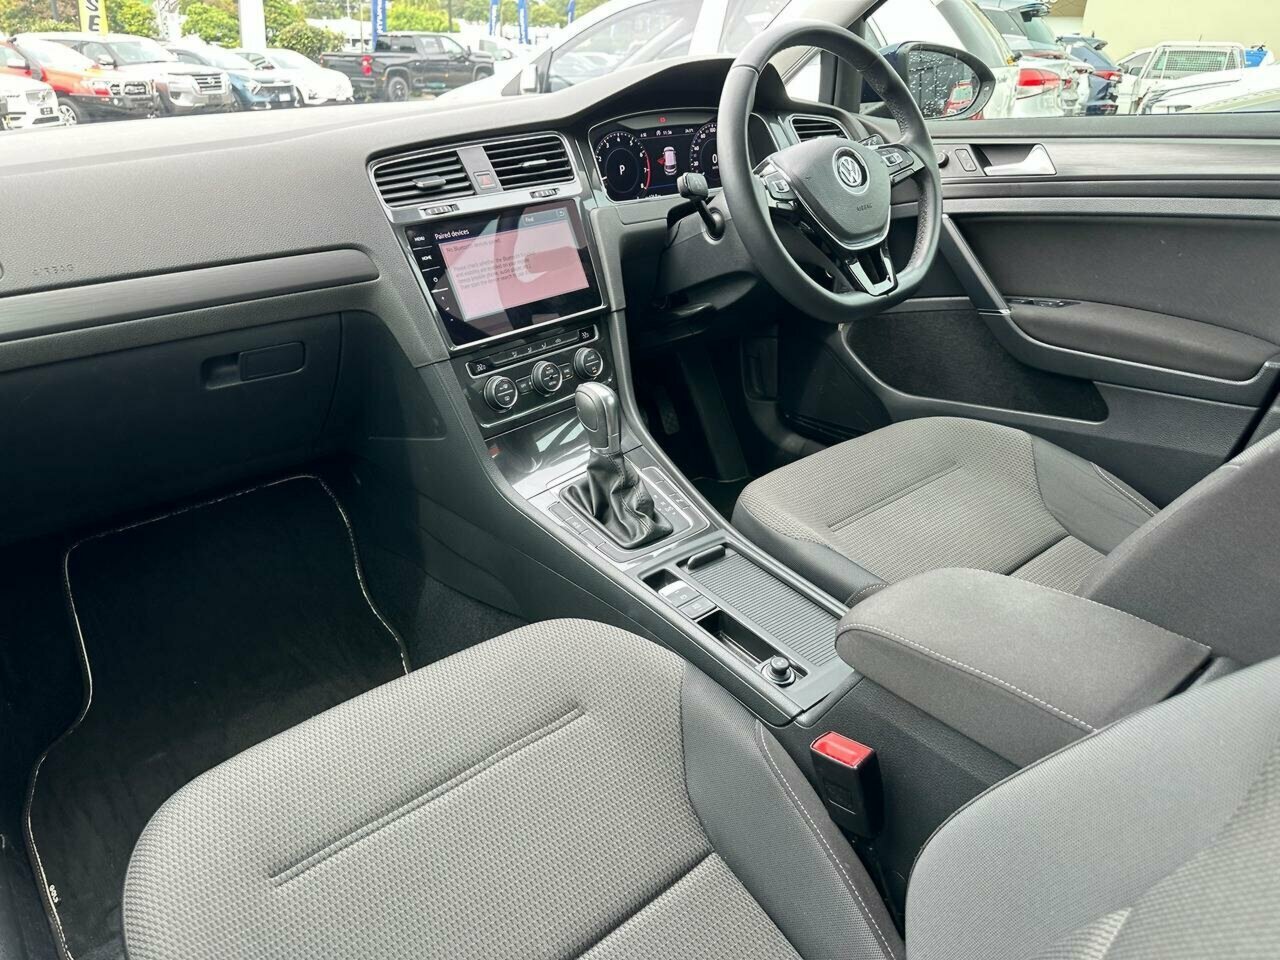 2017 Volkswagen Golf 7.5 MY18 110TSI DSG Comfortline Hatch Image 11